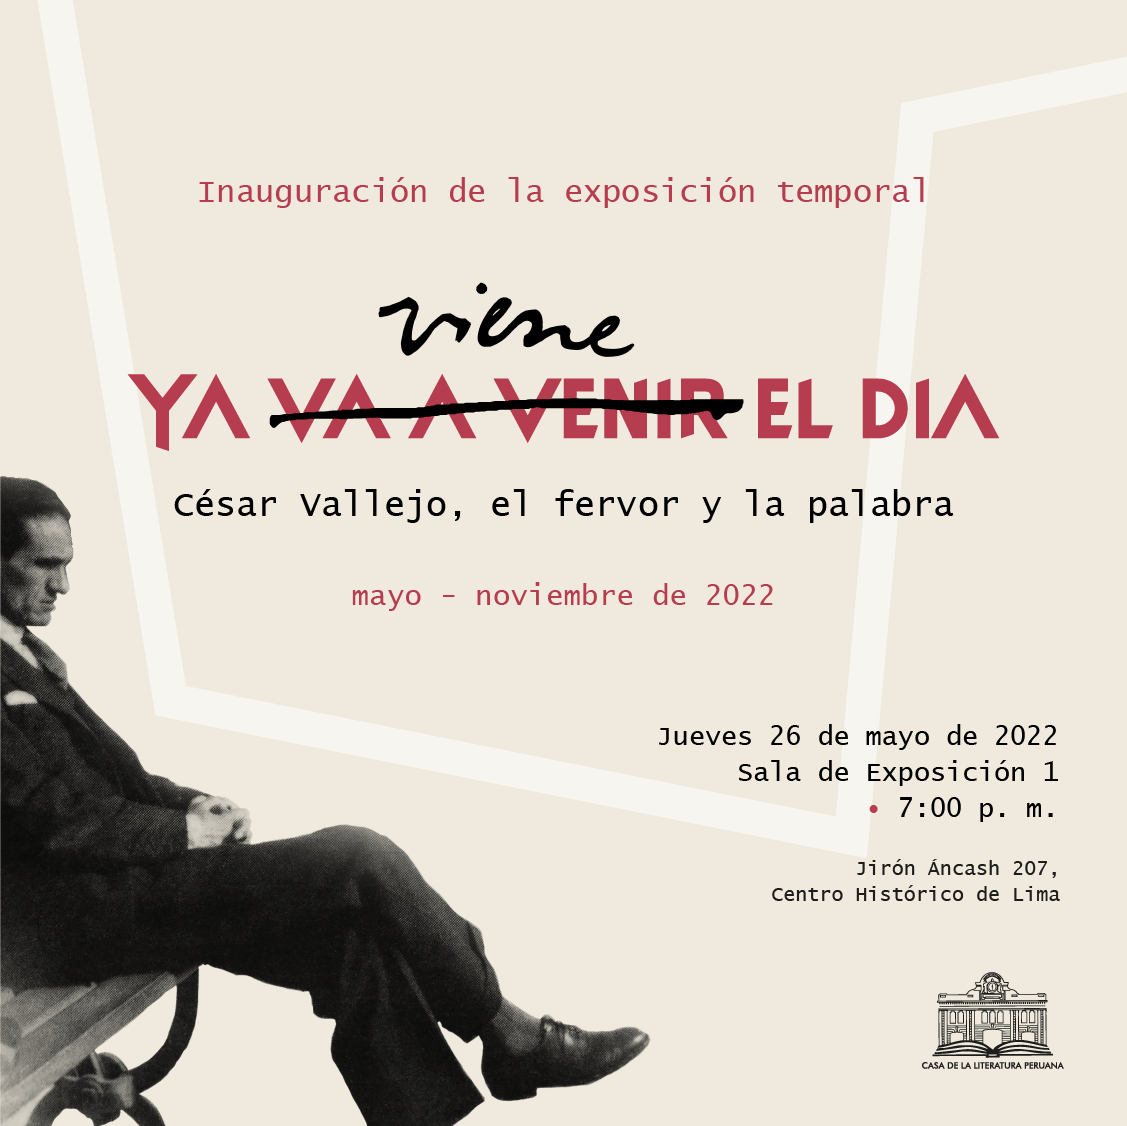 César Vallejo: Poesía y artes escénicas en ceremonia inaugural